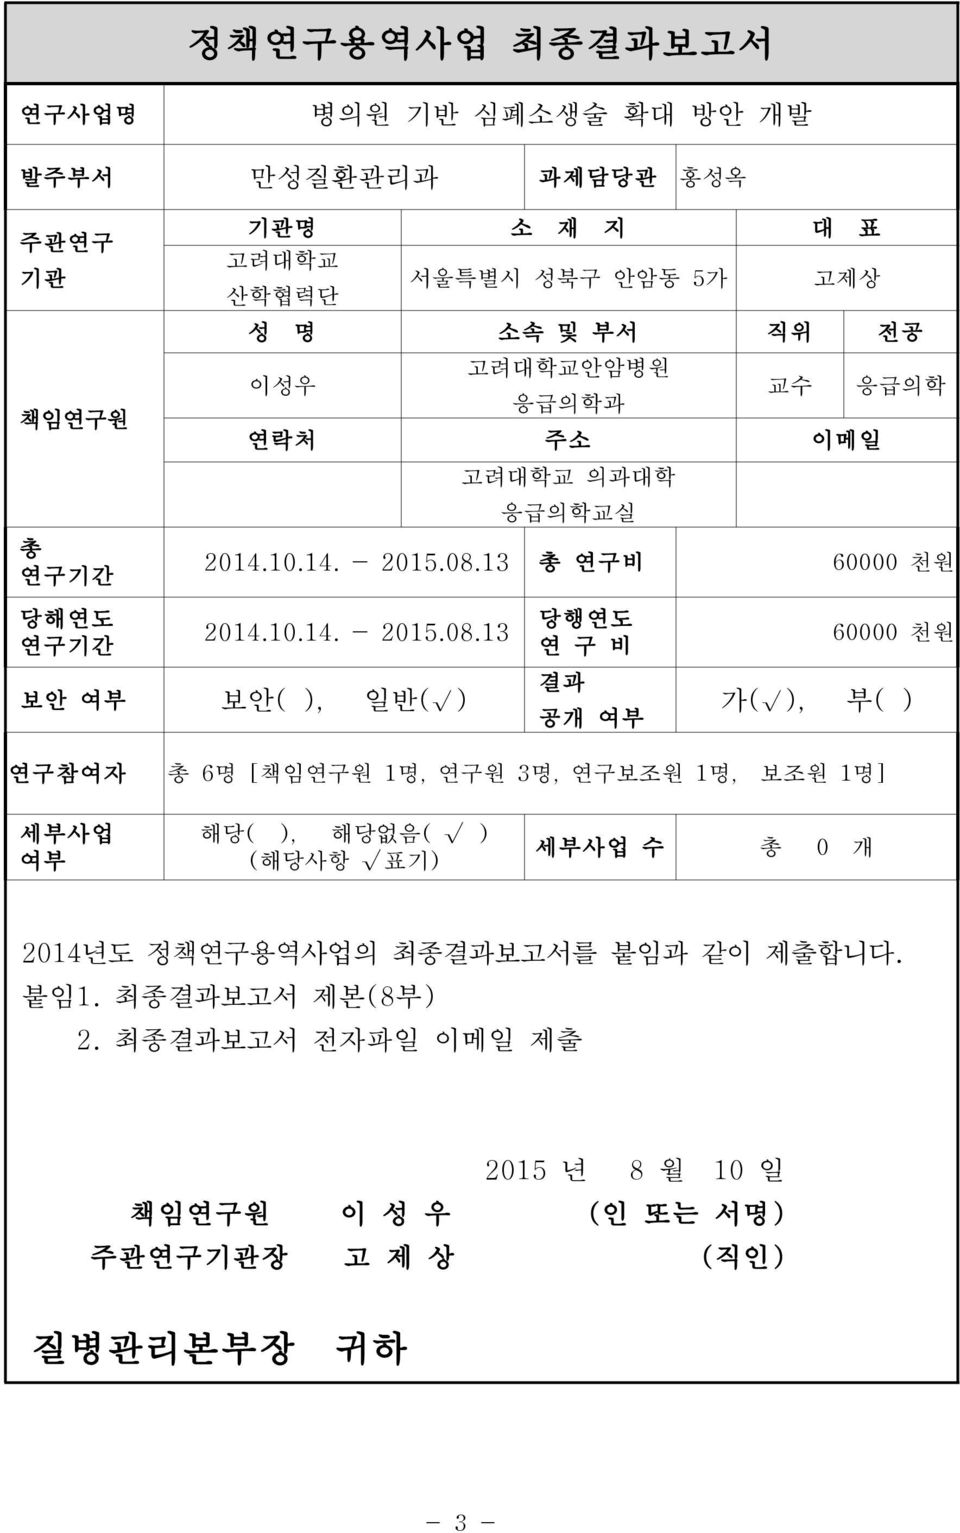 13 총 연구비 60000 천원 당해연도 연구기간 2014.10.14. - 2015.08.